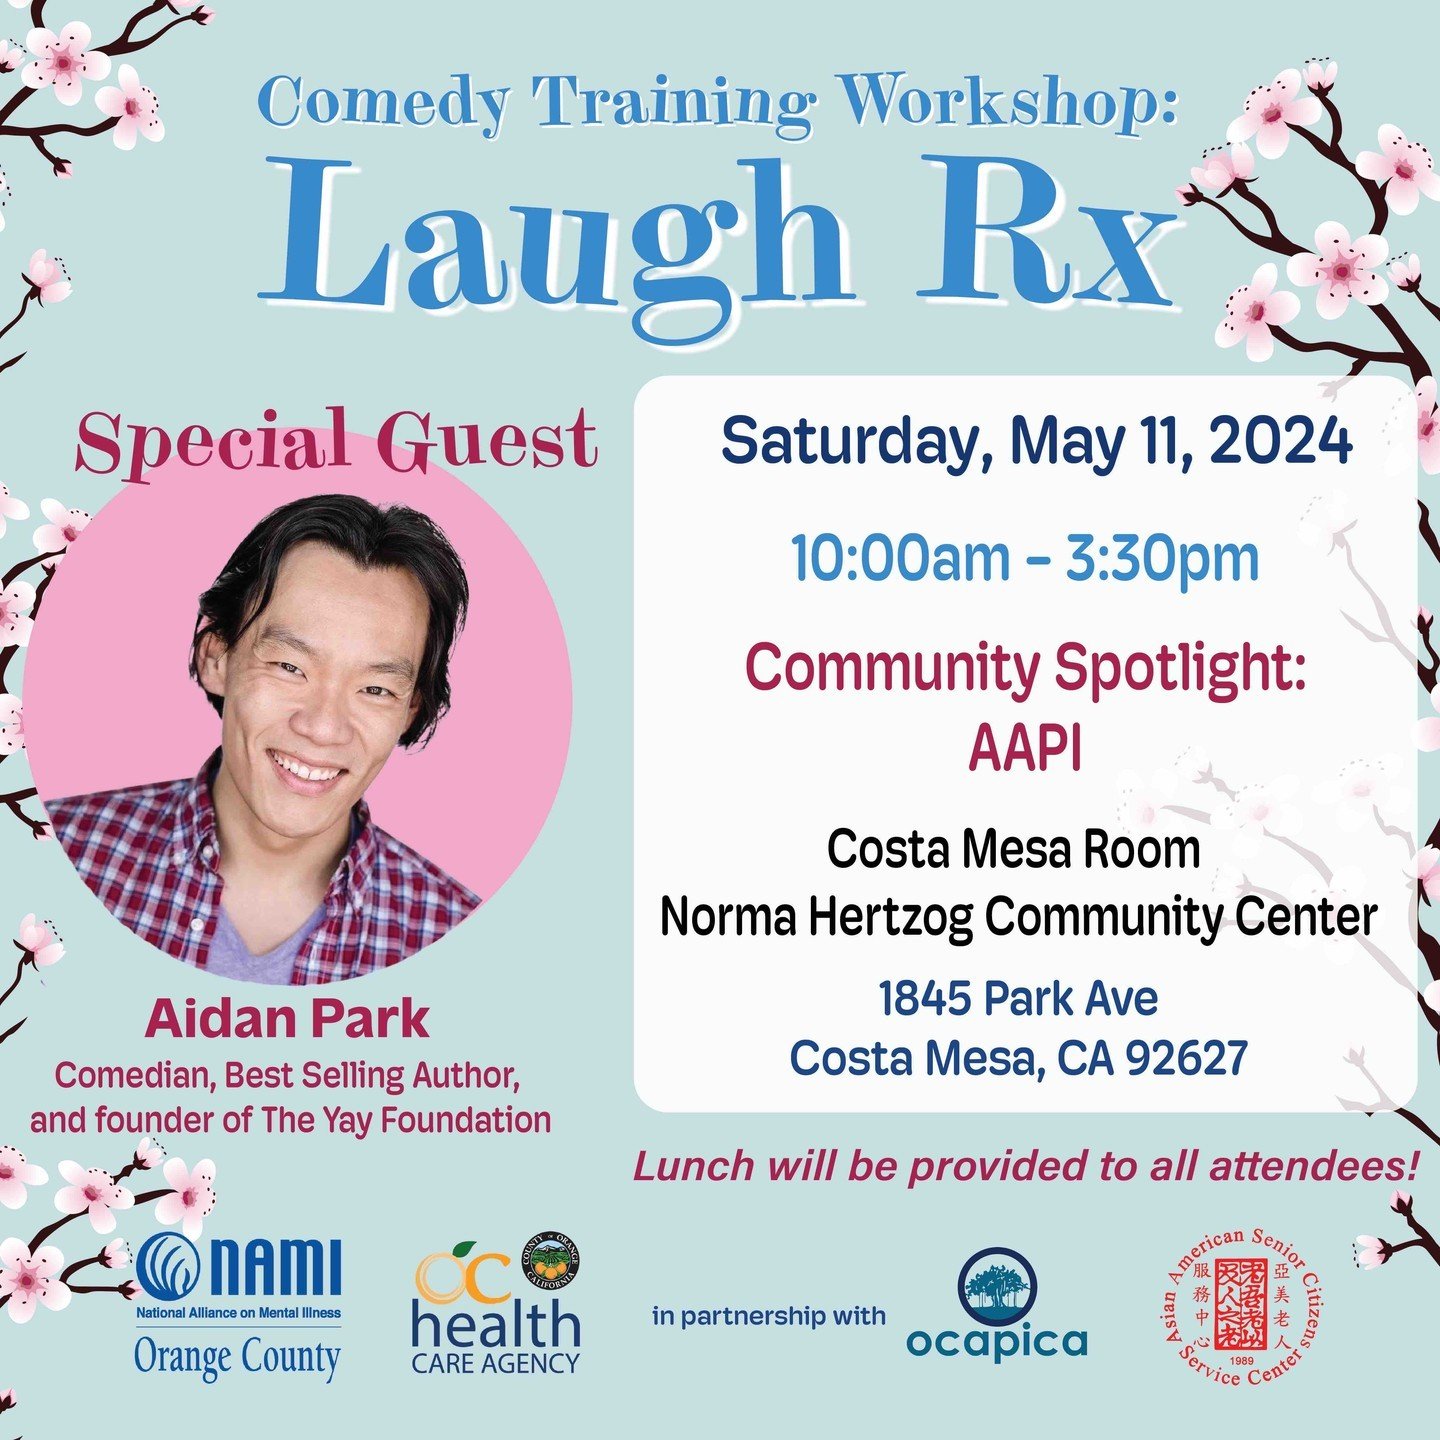 Chia sẻ tiếng cười với chúng tôi! 🎤 Hội thảo hài kịch độc thoại Laugh Rx tiếp theo của chúng tôi sẽ diễn ra vào Thứ Bảy, ngày 11 tháng Năm tại Trung tâm Cộng đồng Norma Hertzog ở Costa Mesa, CA. 🌟 Hội thảo sẽ được dẫn dắt bởi Aidan Park, diễn viên hài chuyên nghiệp, tác giả bán chạy nhất, 